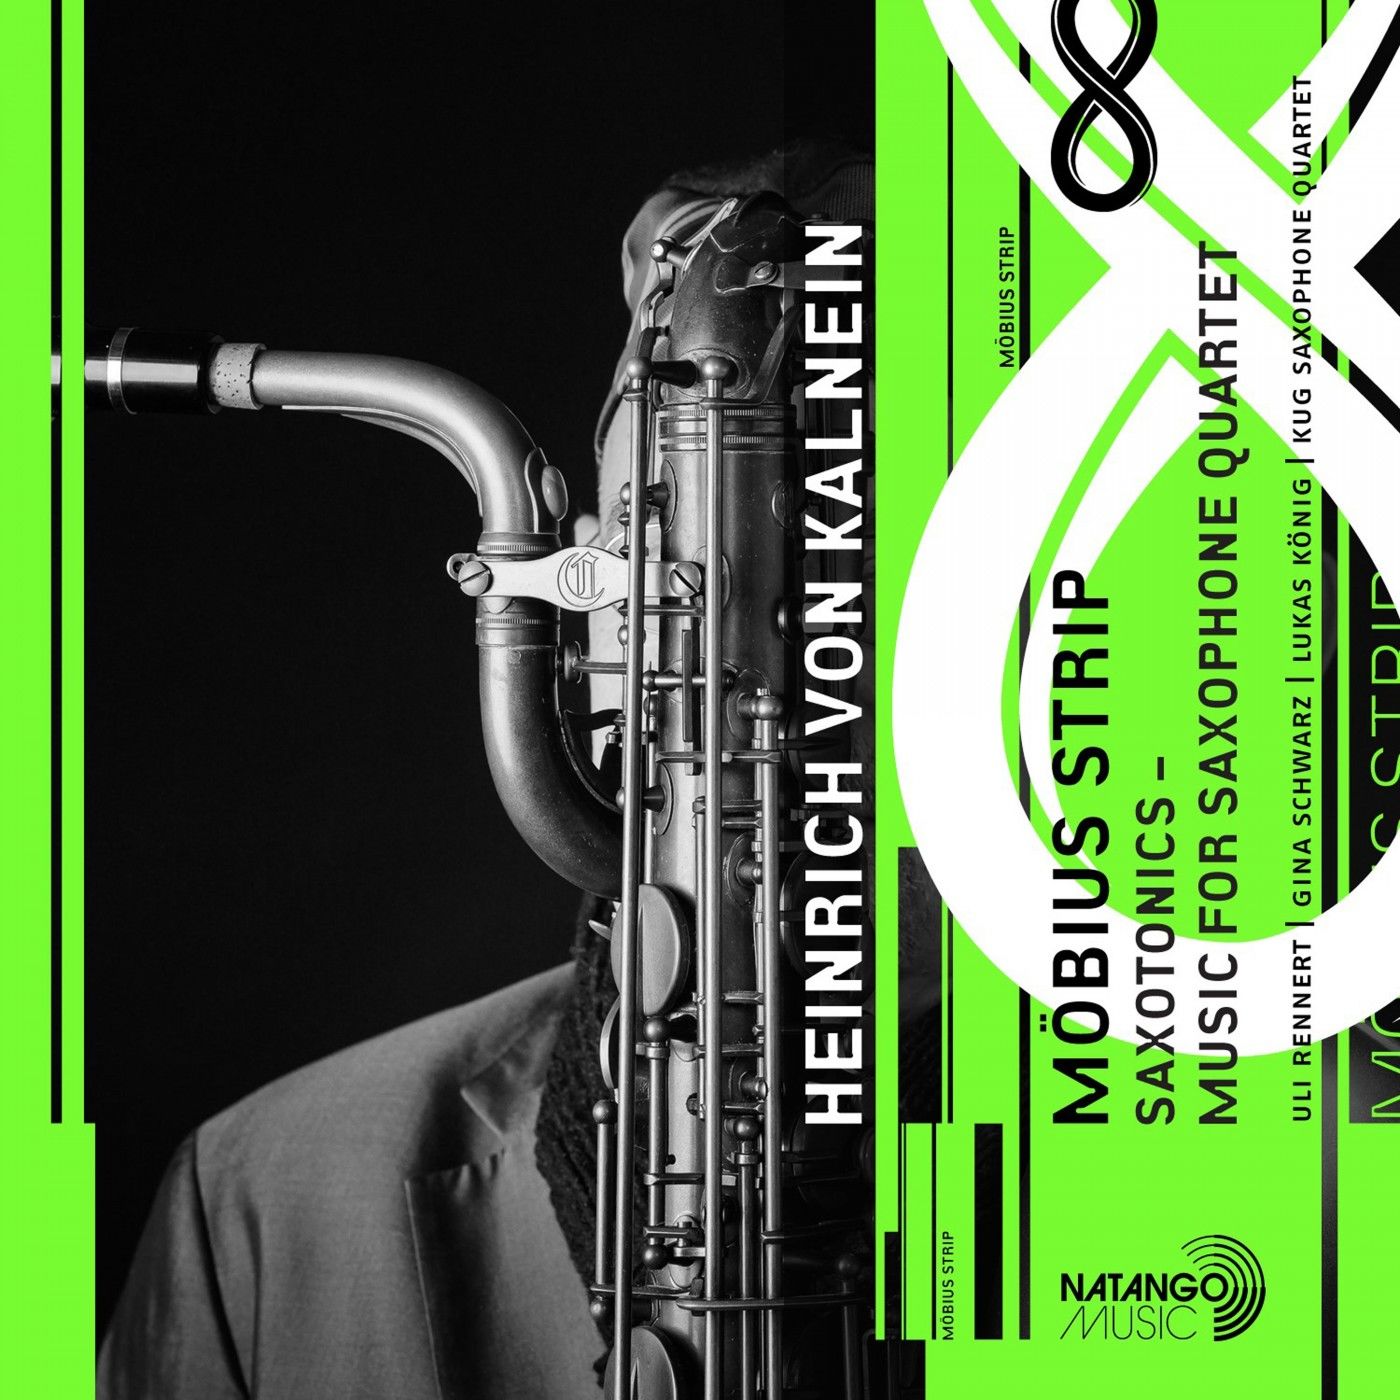 Heinrich Von Kalnein - Saxotonics - Music for Saxophone Quartet (2020) [FLAC 24bit/96kHz]